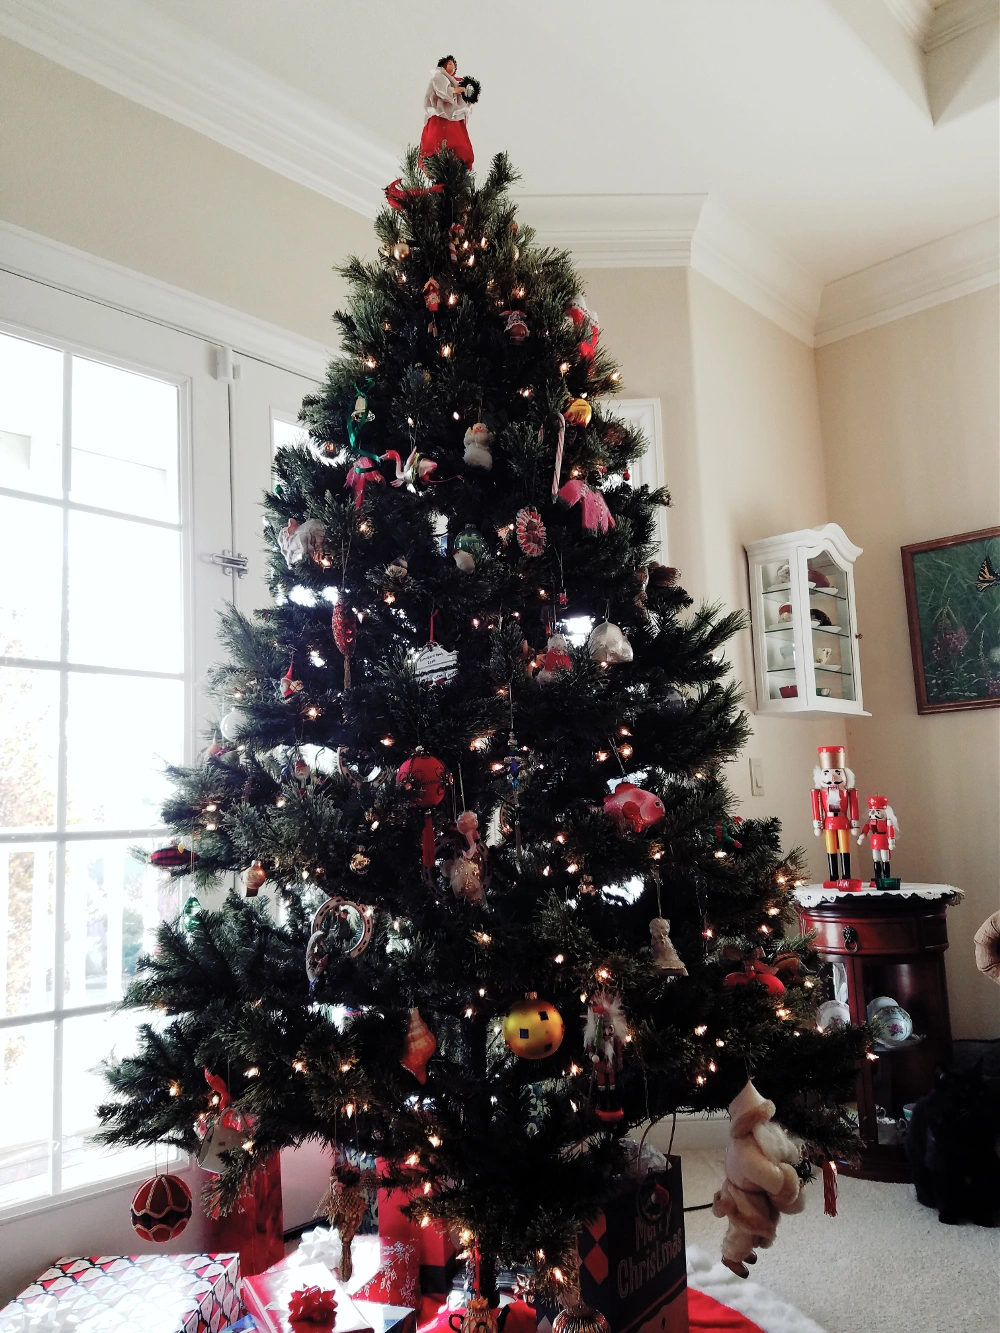 #Christmas #family #tree #ornaments